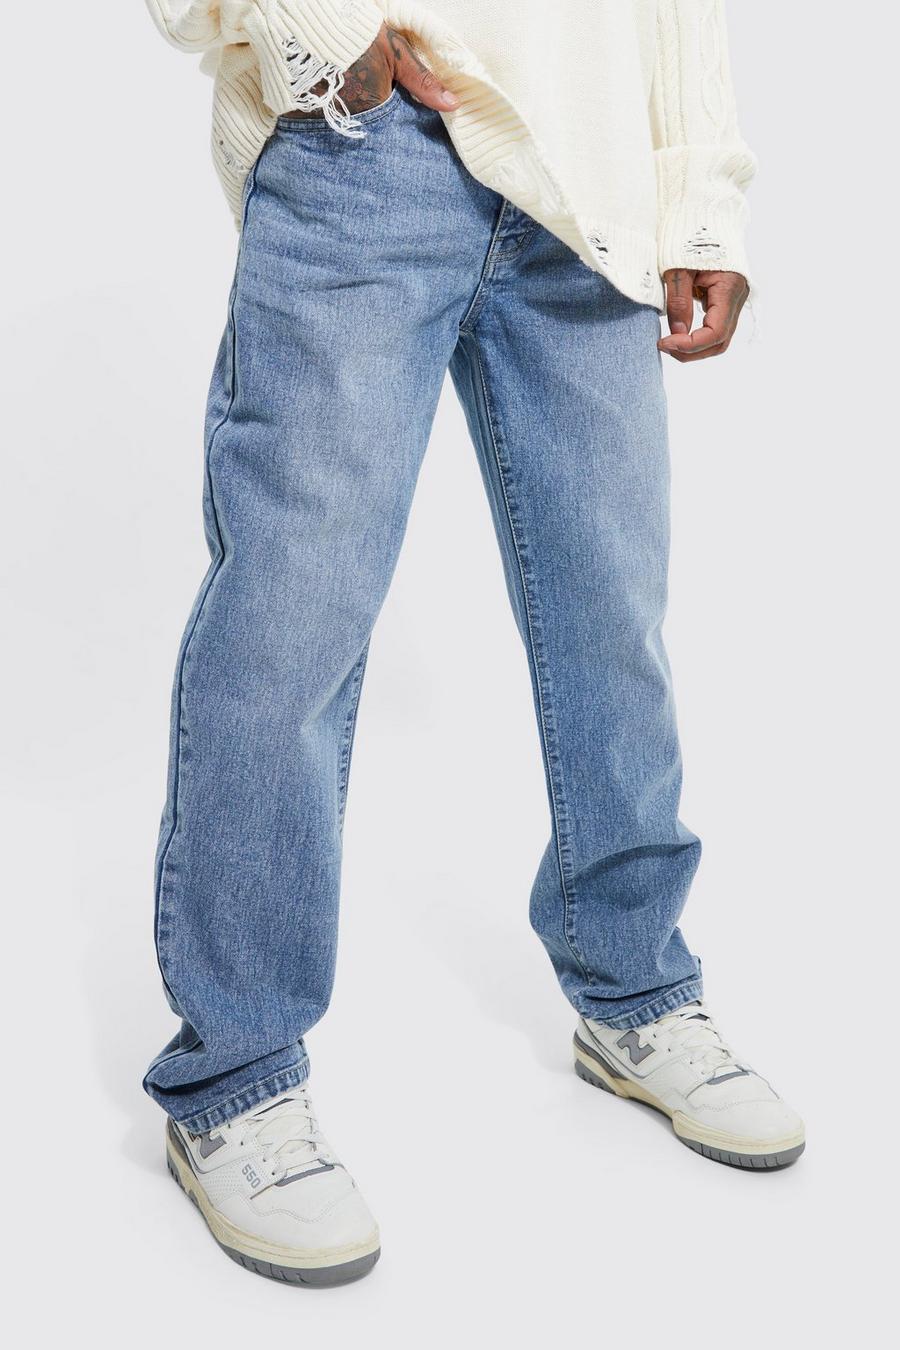 Loose Fit Men's Jeans - Light Wash